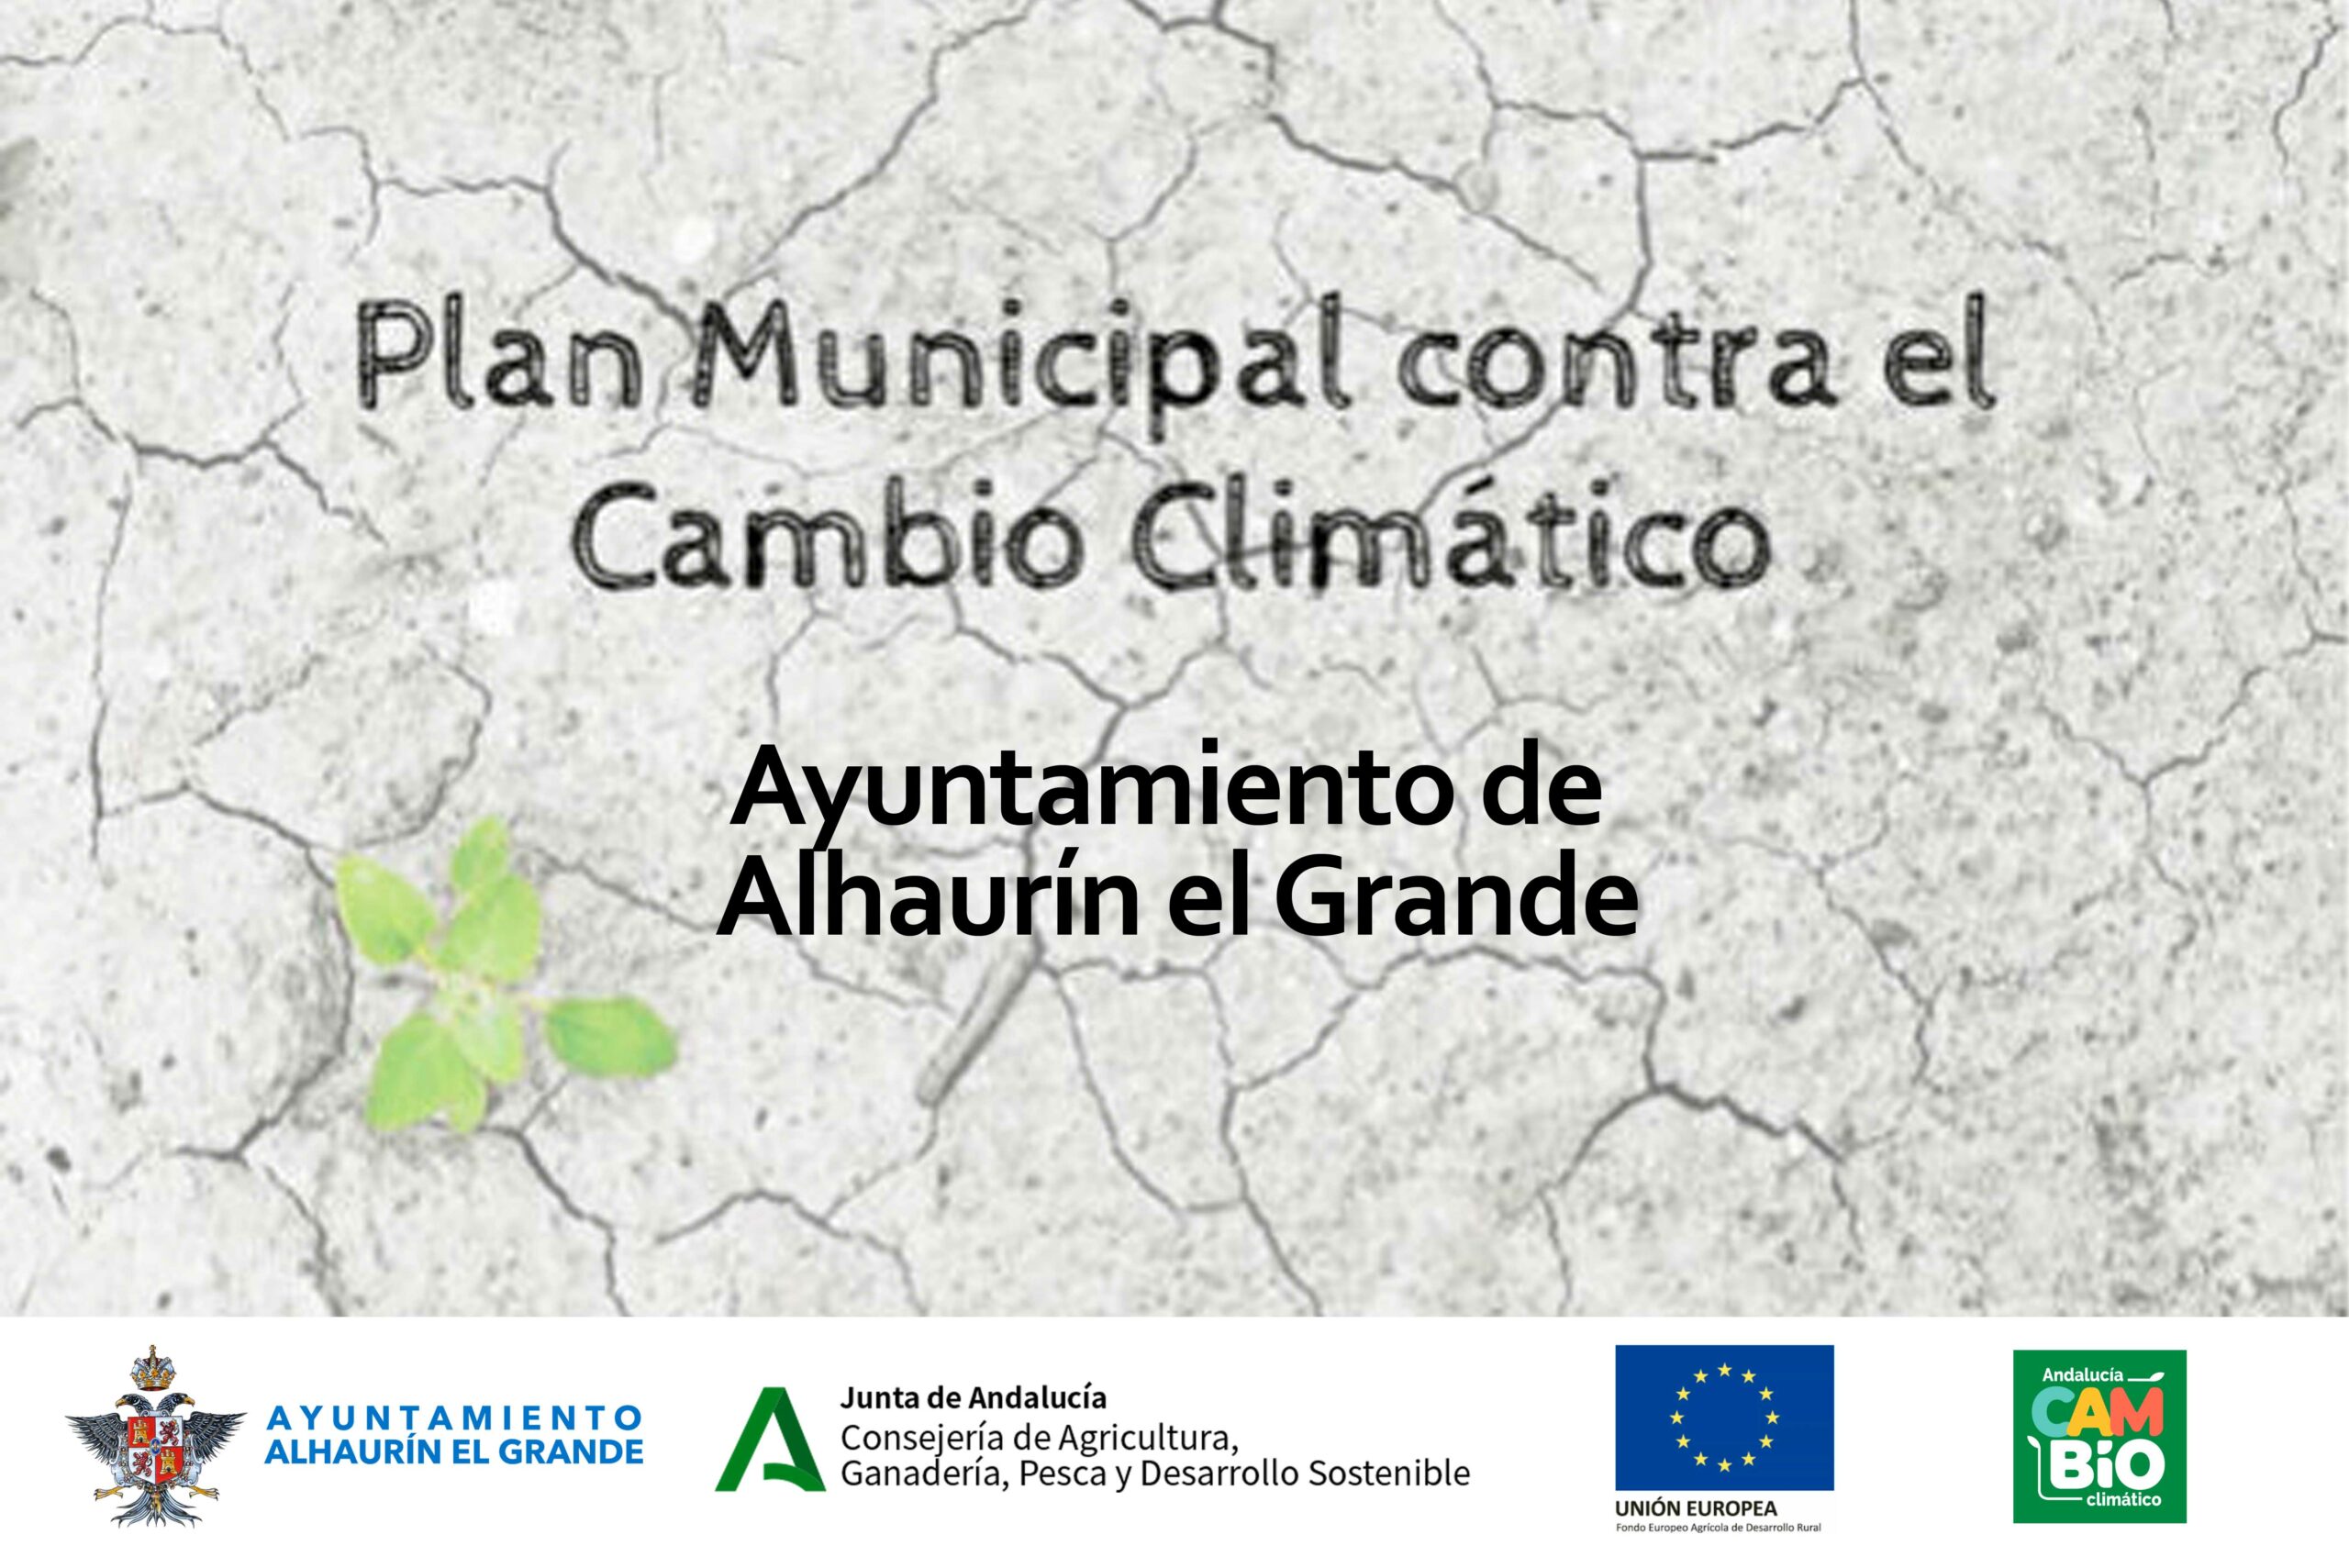 Alhaurín el Grande implementa un Plan Municipal participativo para luchar contra el Cambio climático